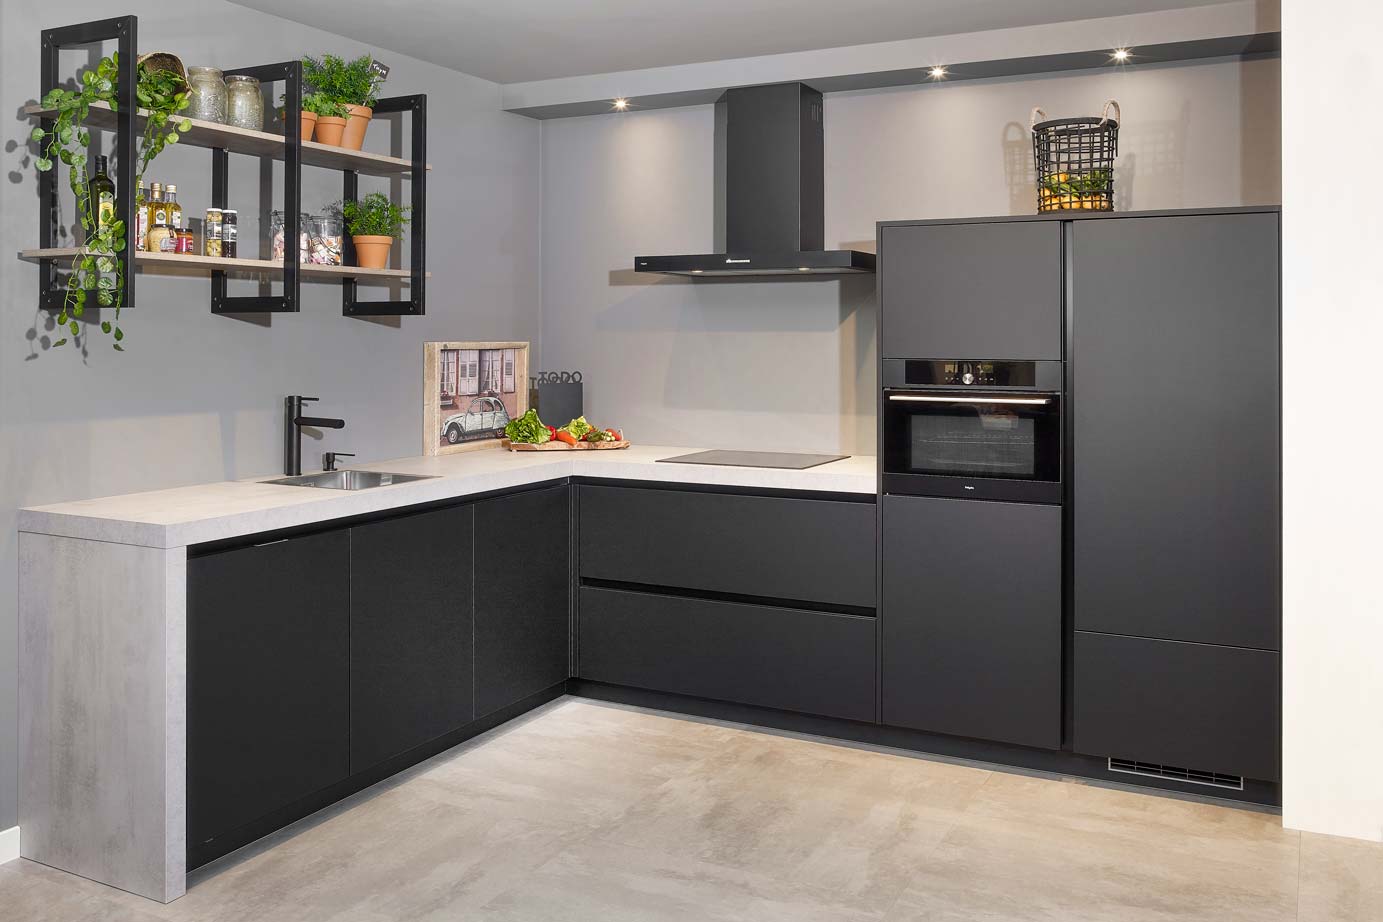 Moderne keuken industrieel met zwarte greeploze fronten en betonlook werkblad